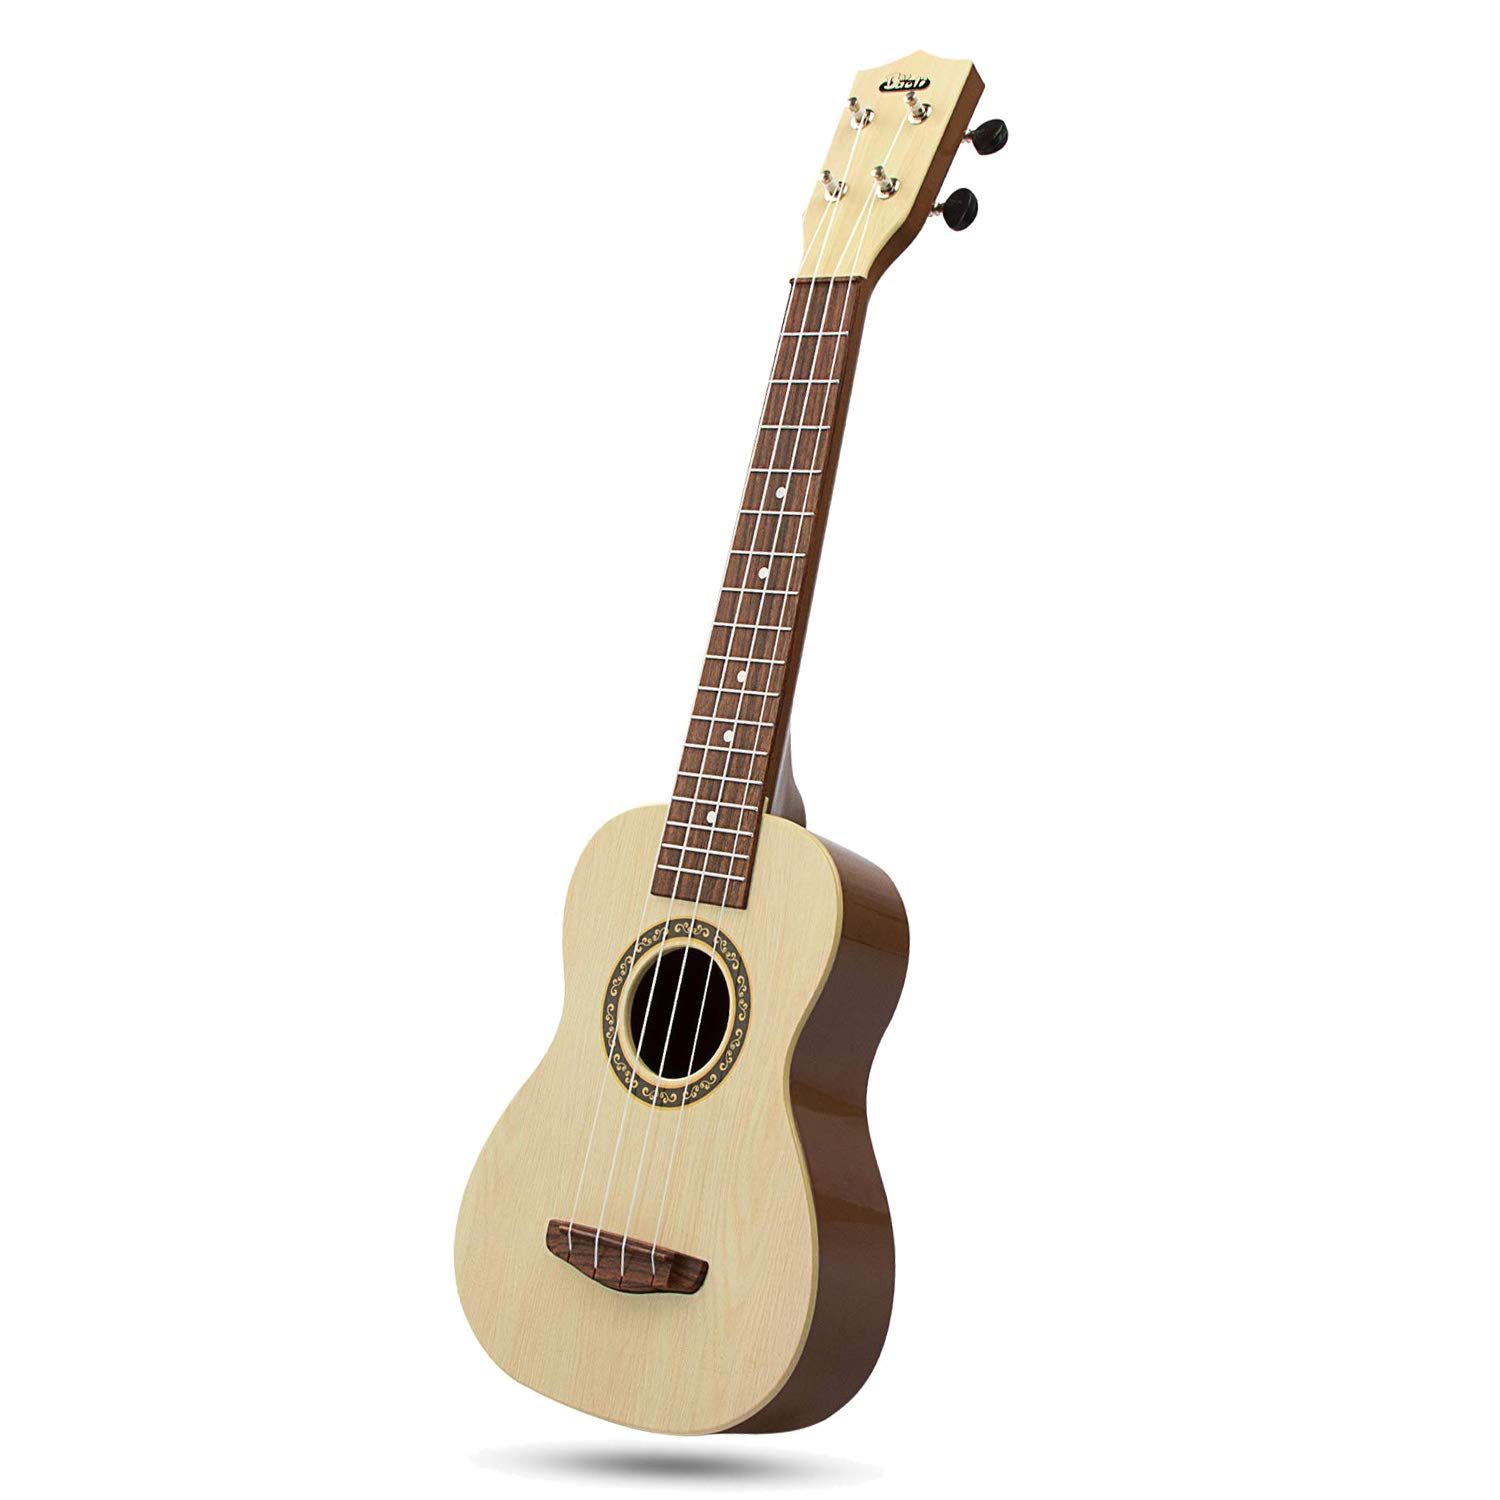 aPerfectLife Ukulele Guitar for Kids, 23 Inch Nylon-String Starter Classical Guitar for Beginner Children (Burlywood)